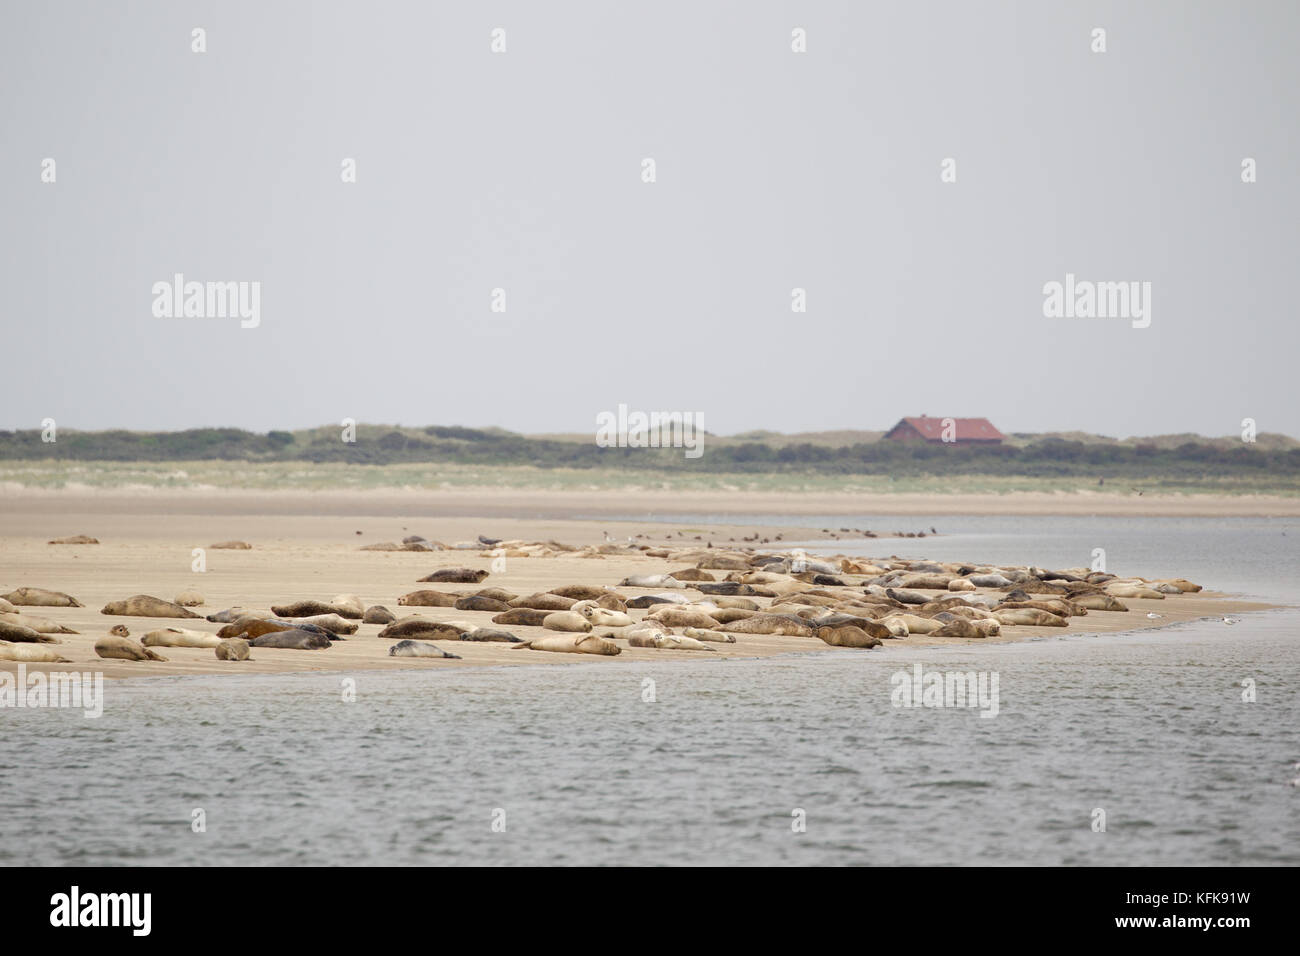 Las focas (Phoca vitulina) sobre un banco de arena en el mar de Wadden, en el mar del Norte isla Juist en Frisia oriental, Alemania, Europa. Foto de stock